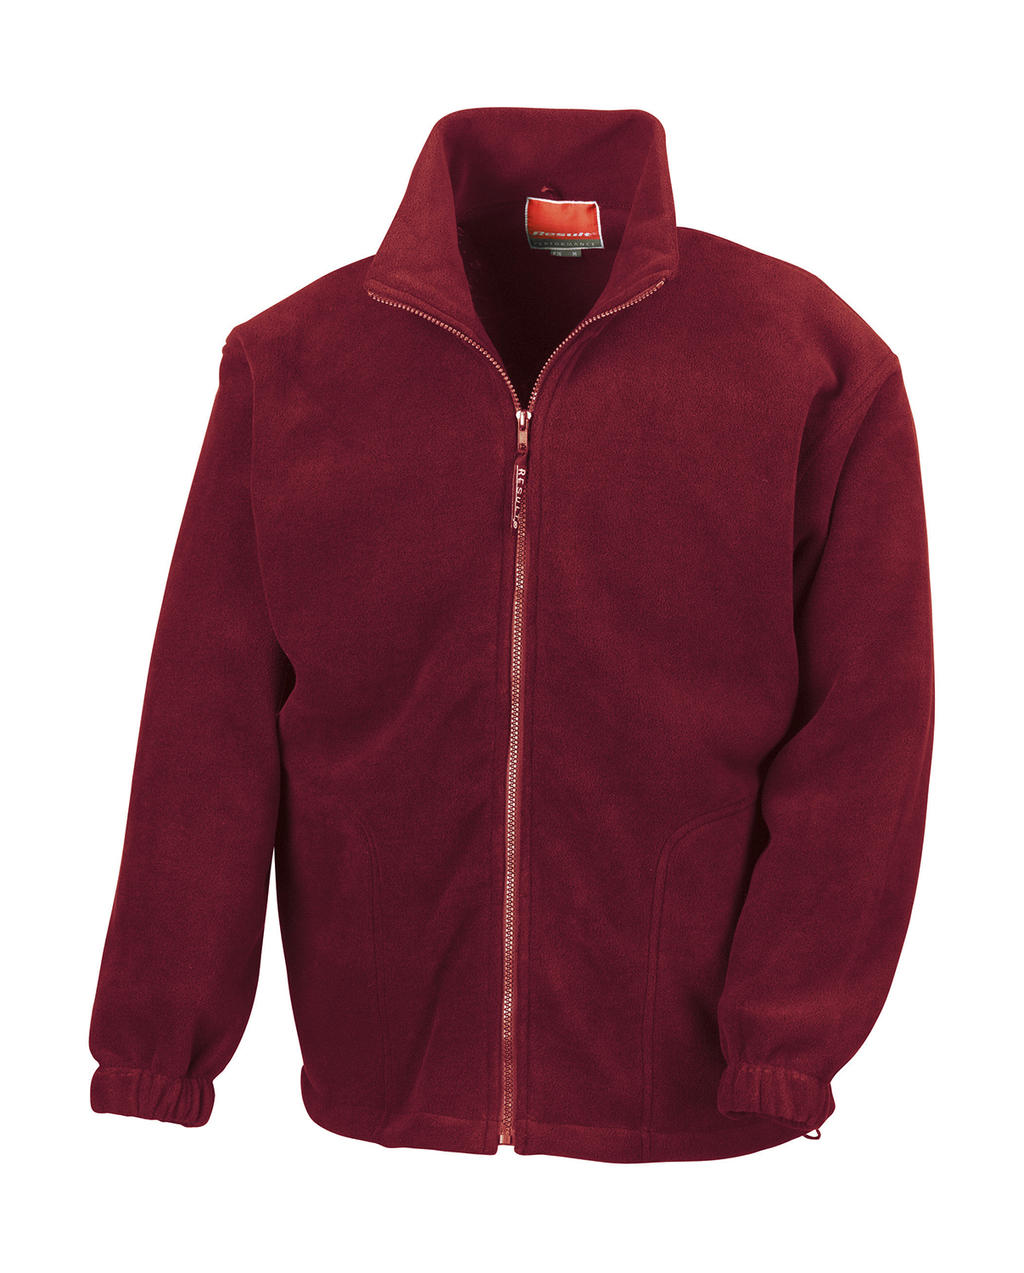 Polartherm™ Jacket - burgundy